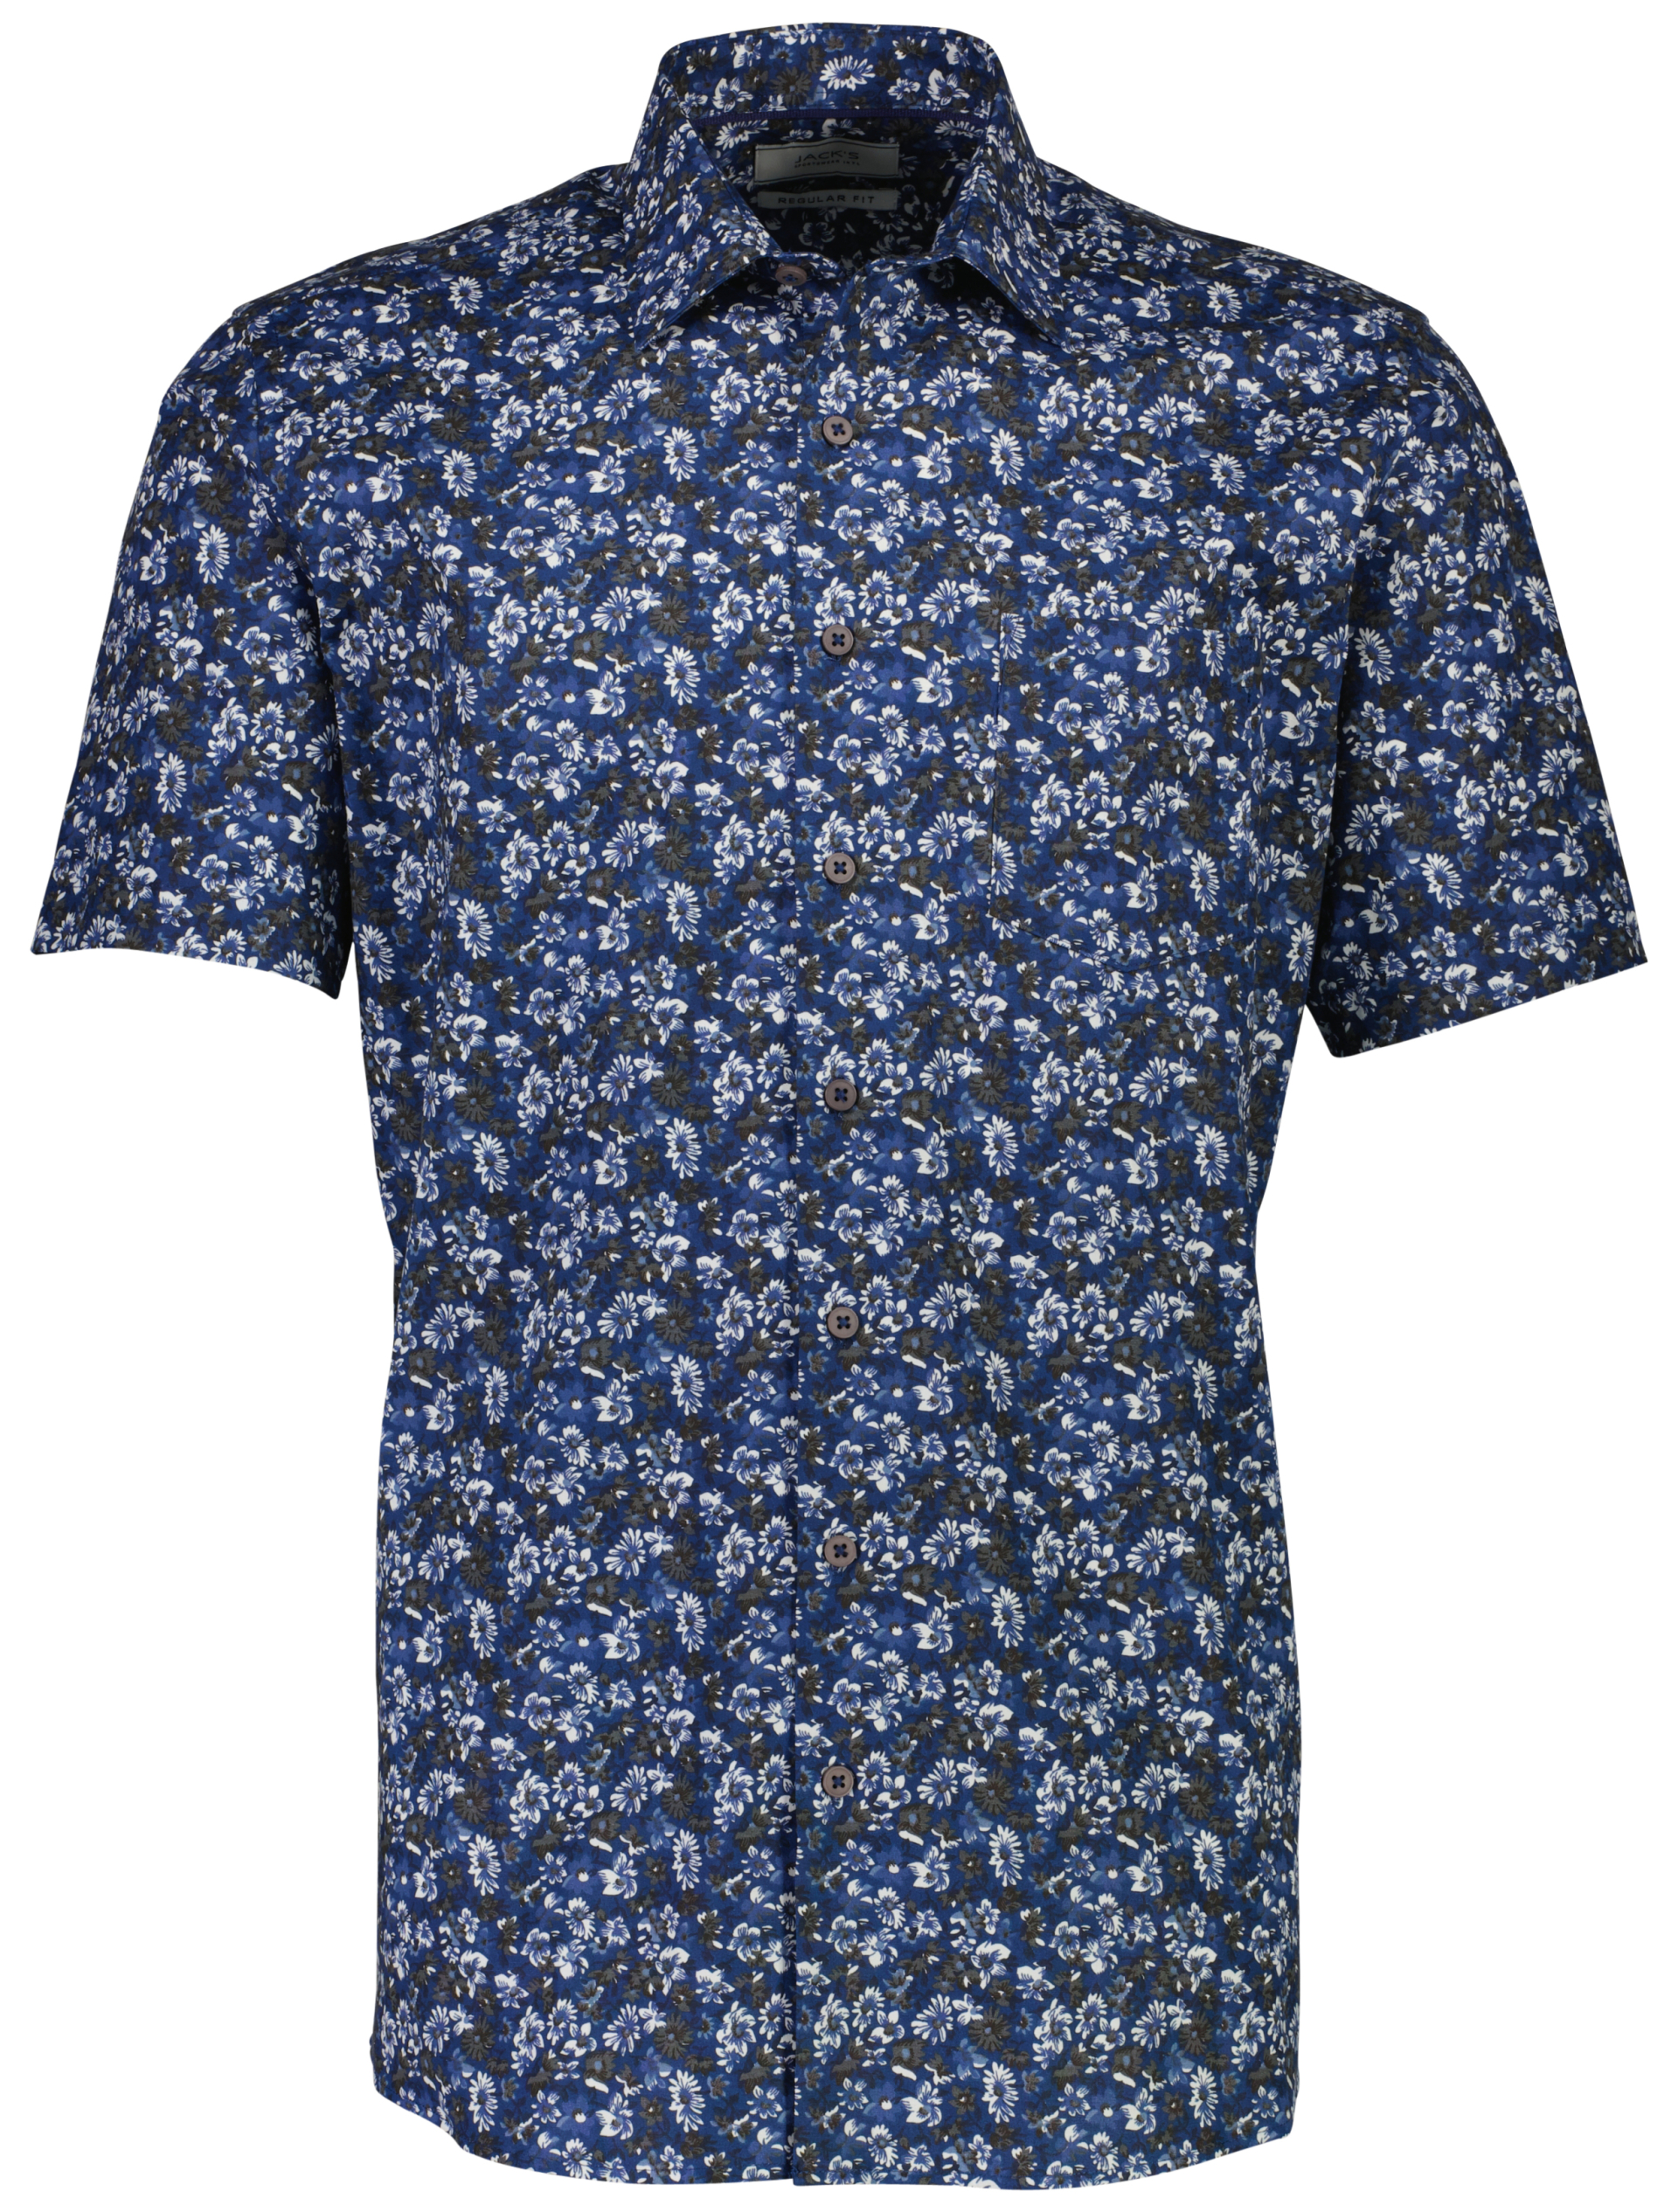 Jack's Casual skjorta blå / navy